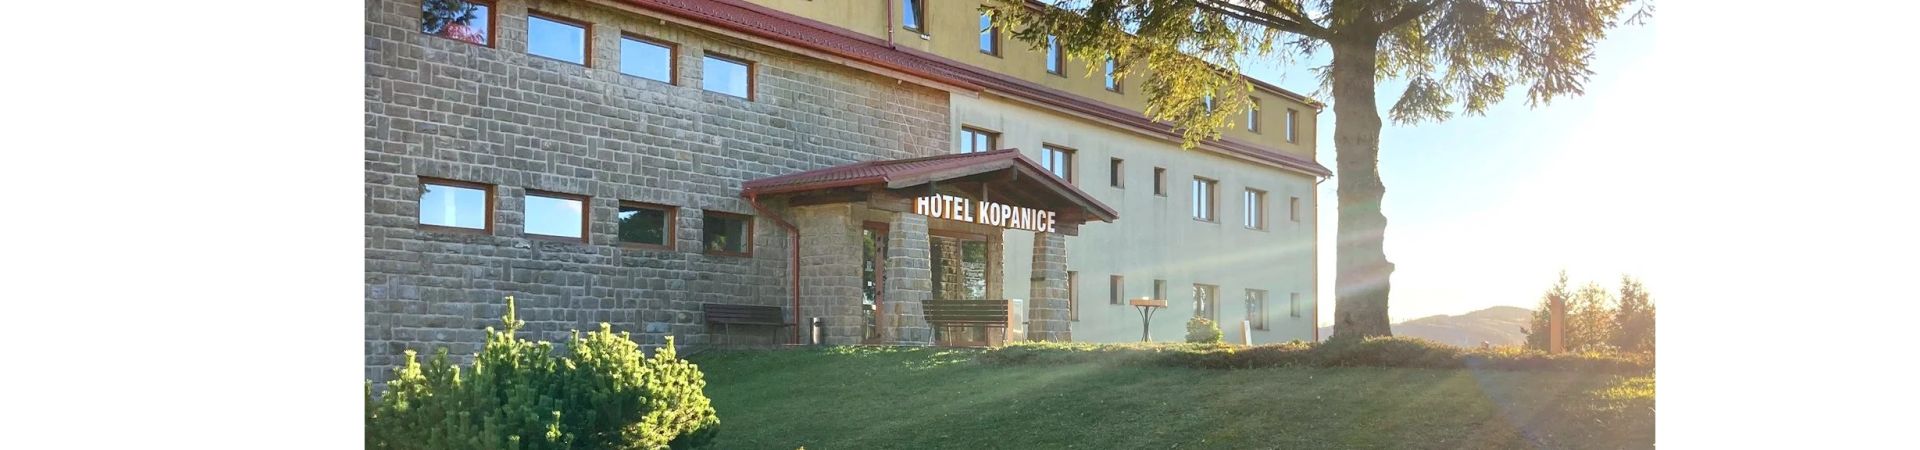 Hotel Kopanice